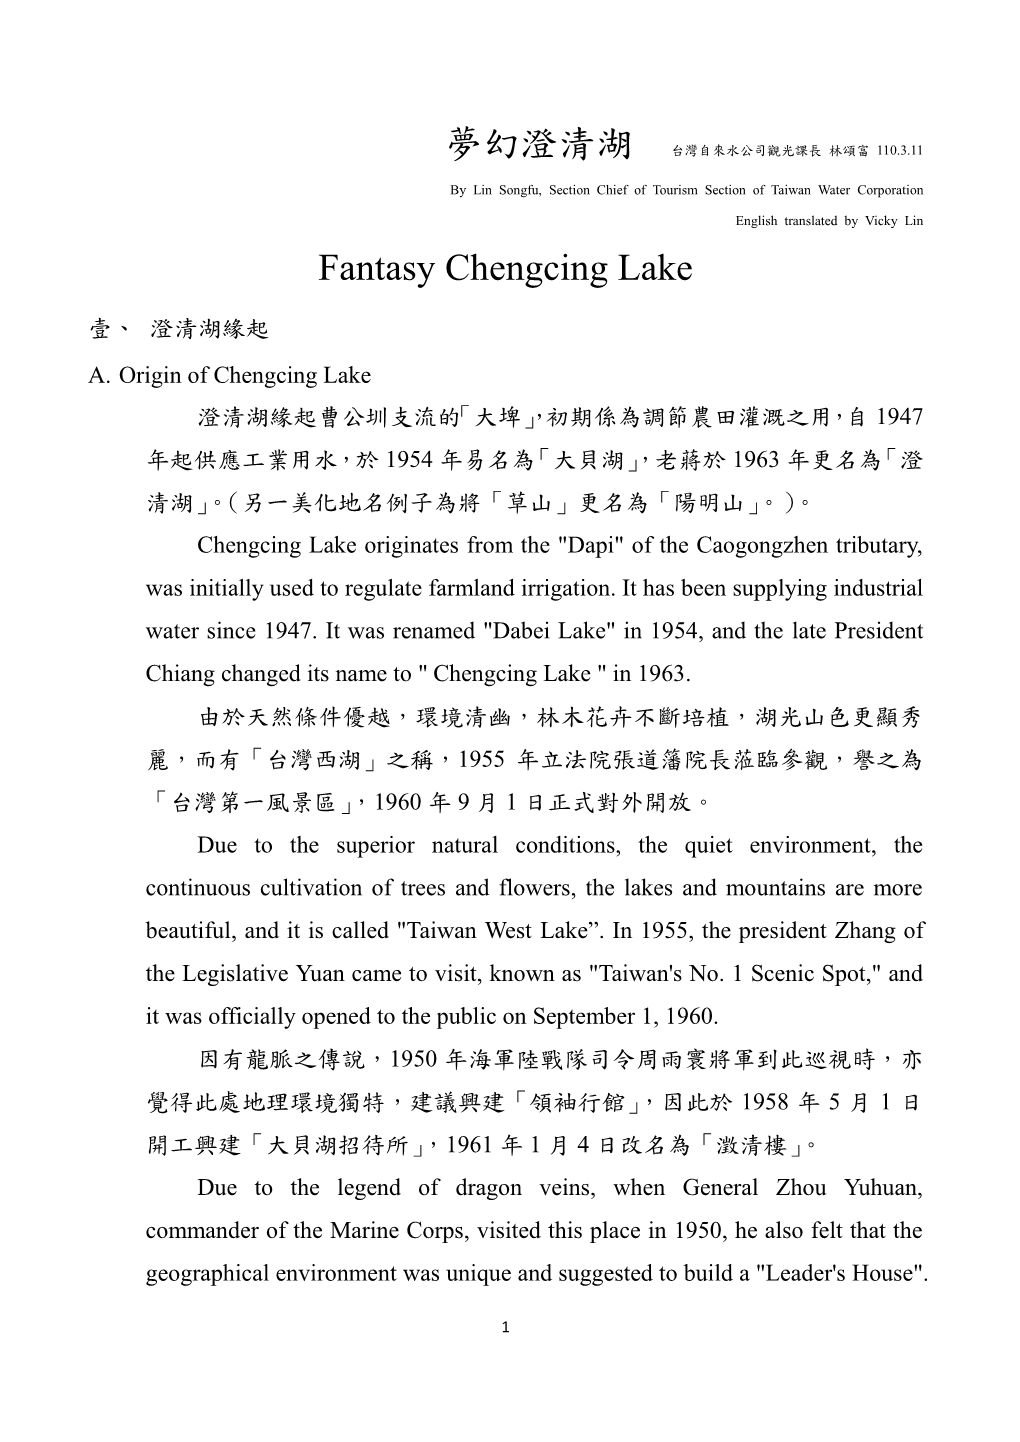 Fantasy Chengcing Lake